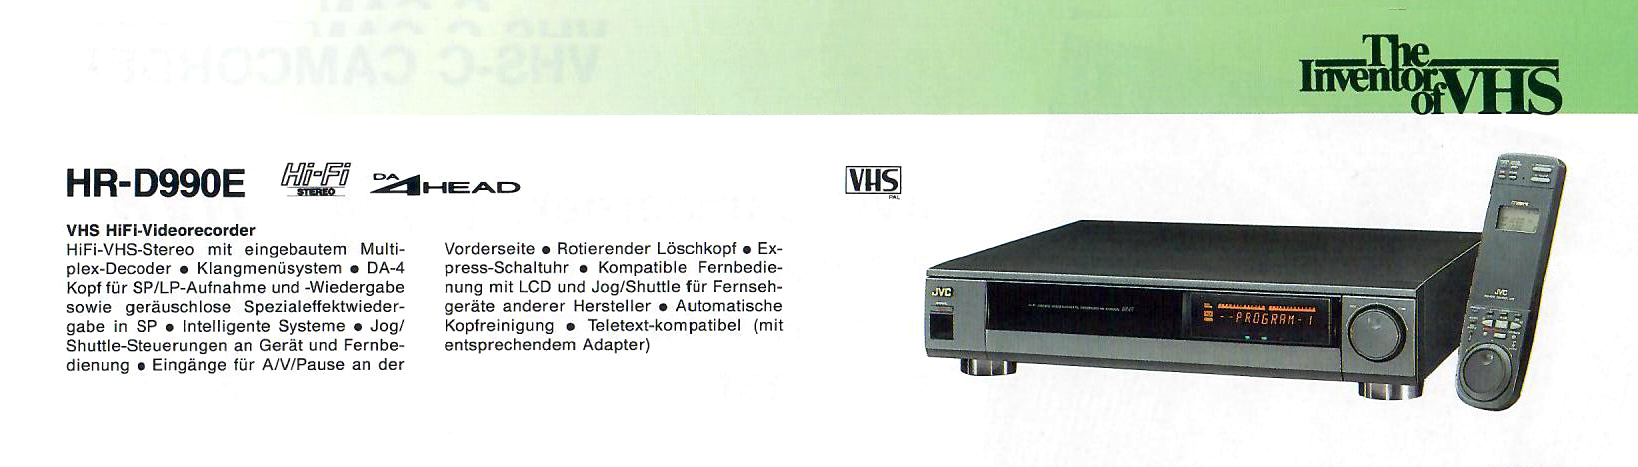 JVC HR-D 990-Prospekt-1992.jpg